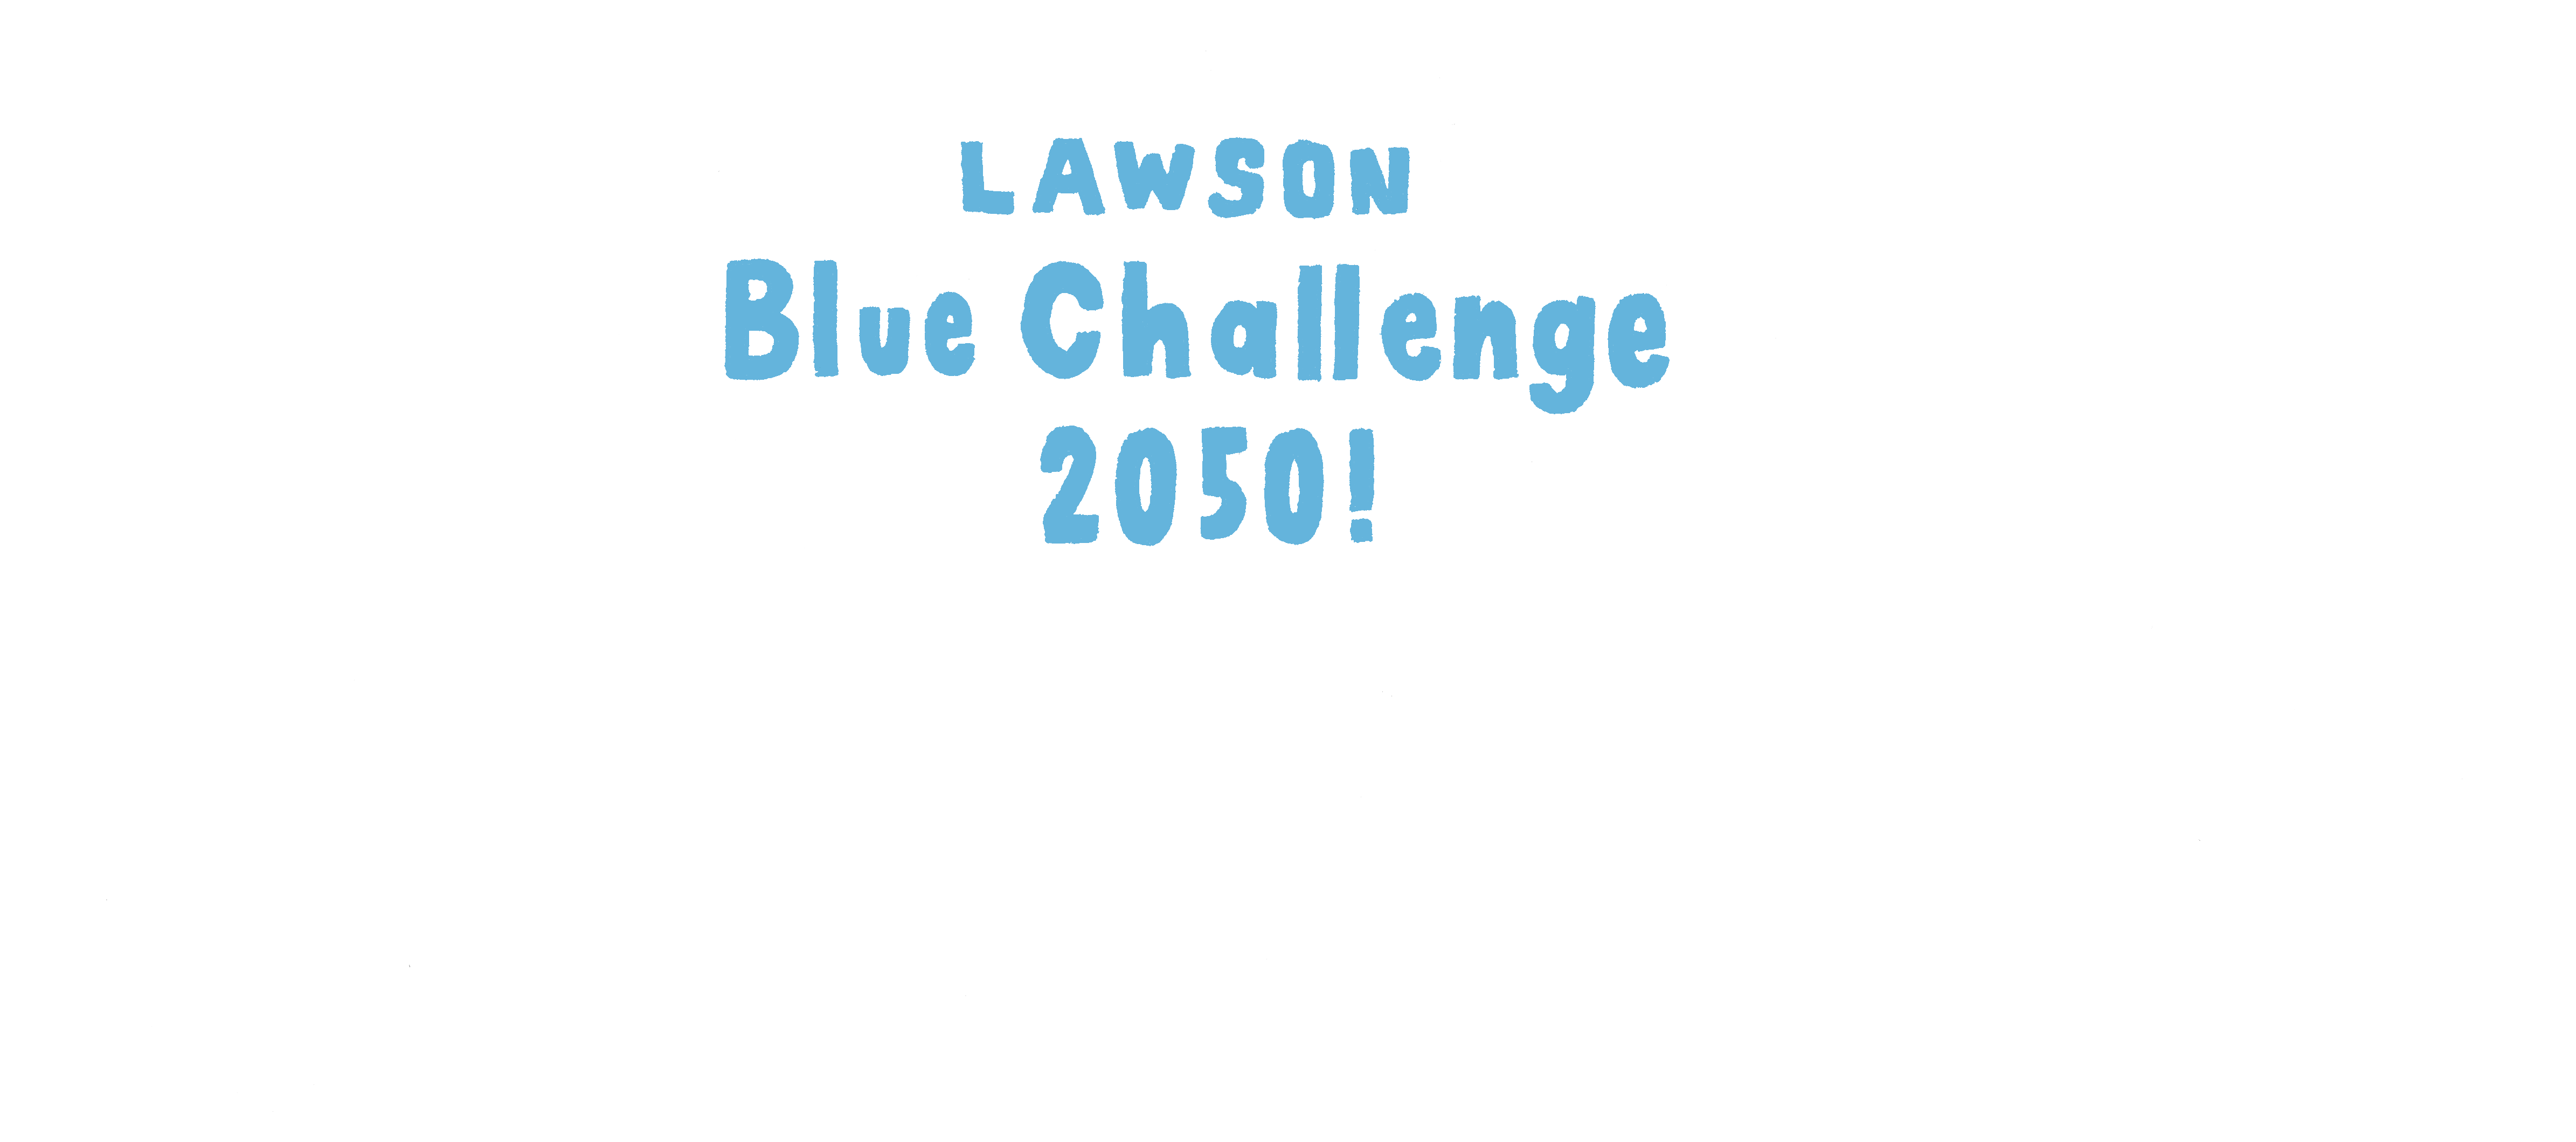 Lawson Blue Challenge 2050!